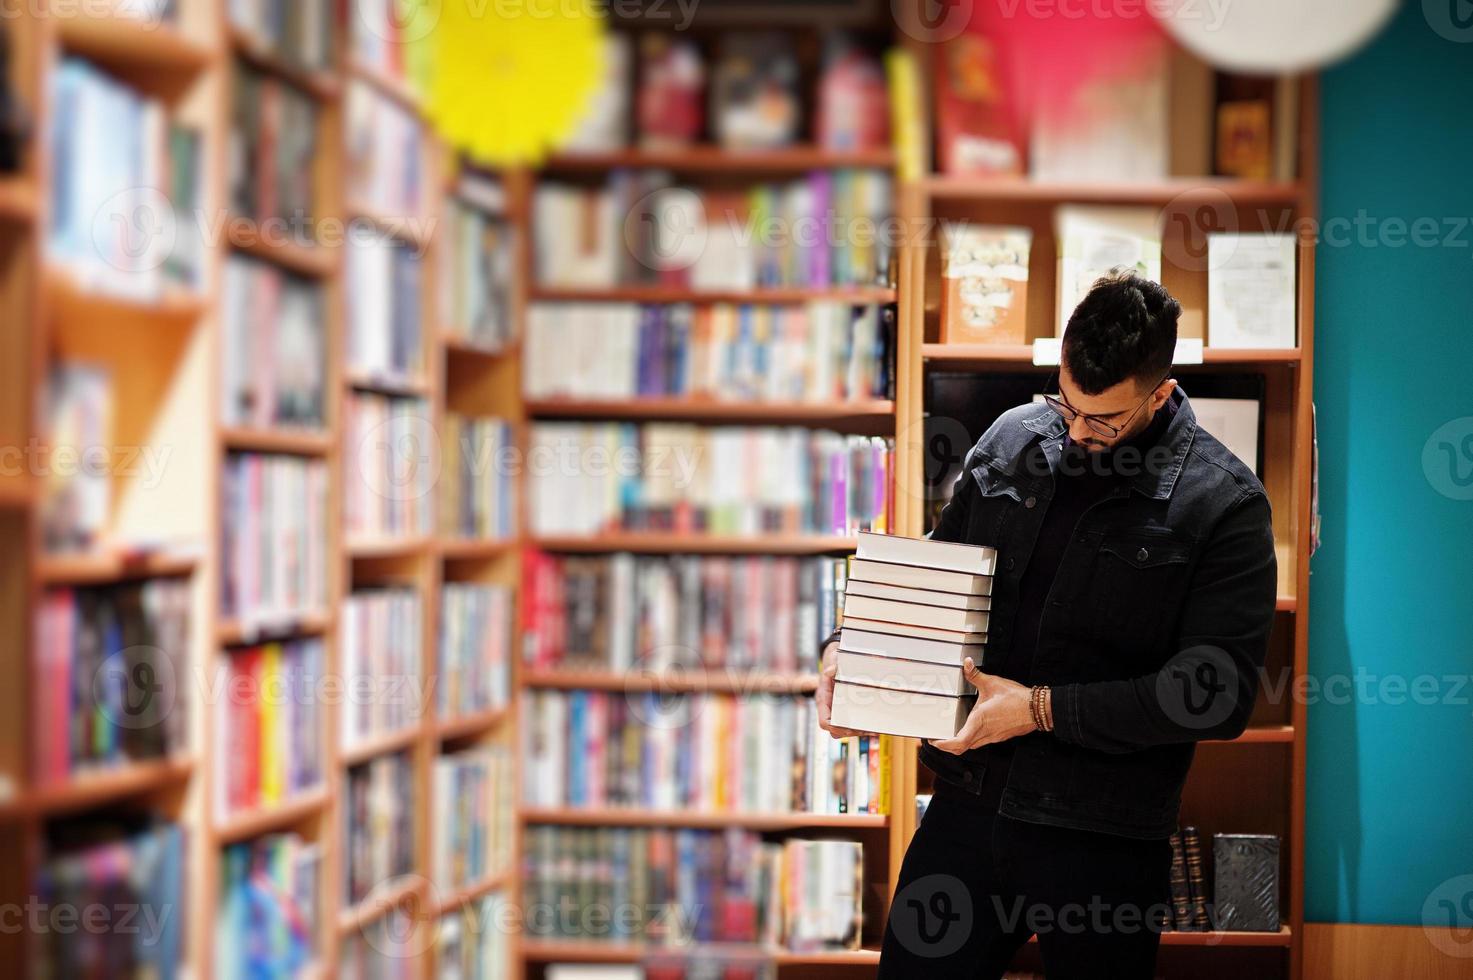 studente arabo alto e intelligente, indossa una giacca di jeans nera e occhiali da vista, in biblioteca con una pila di libri. foto